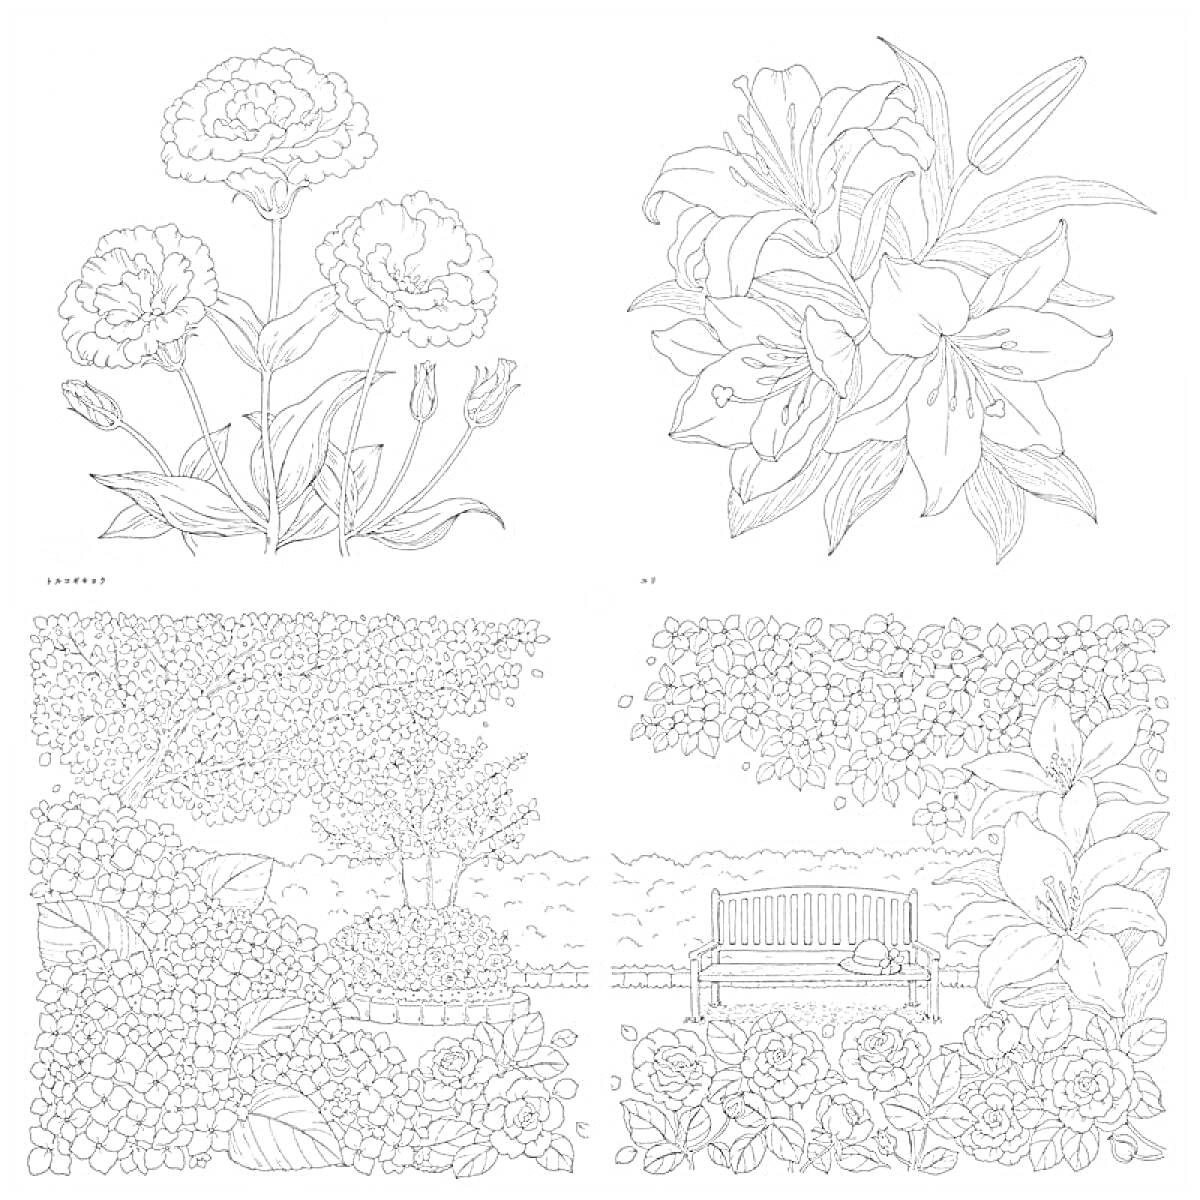 Раскраска Цветы и садовая скамейка (гвоздики, лилии, кусты, деревья, скамейка)